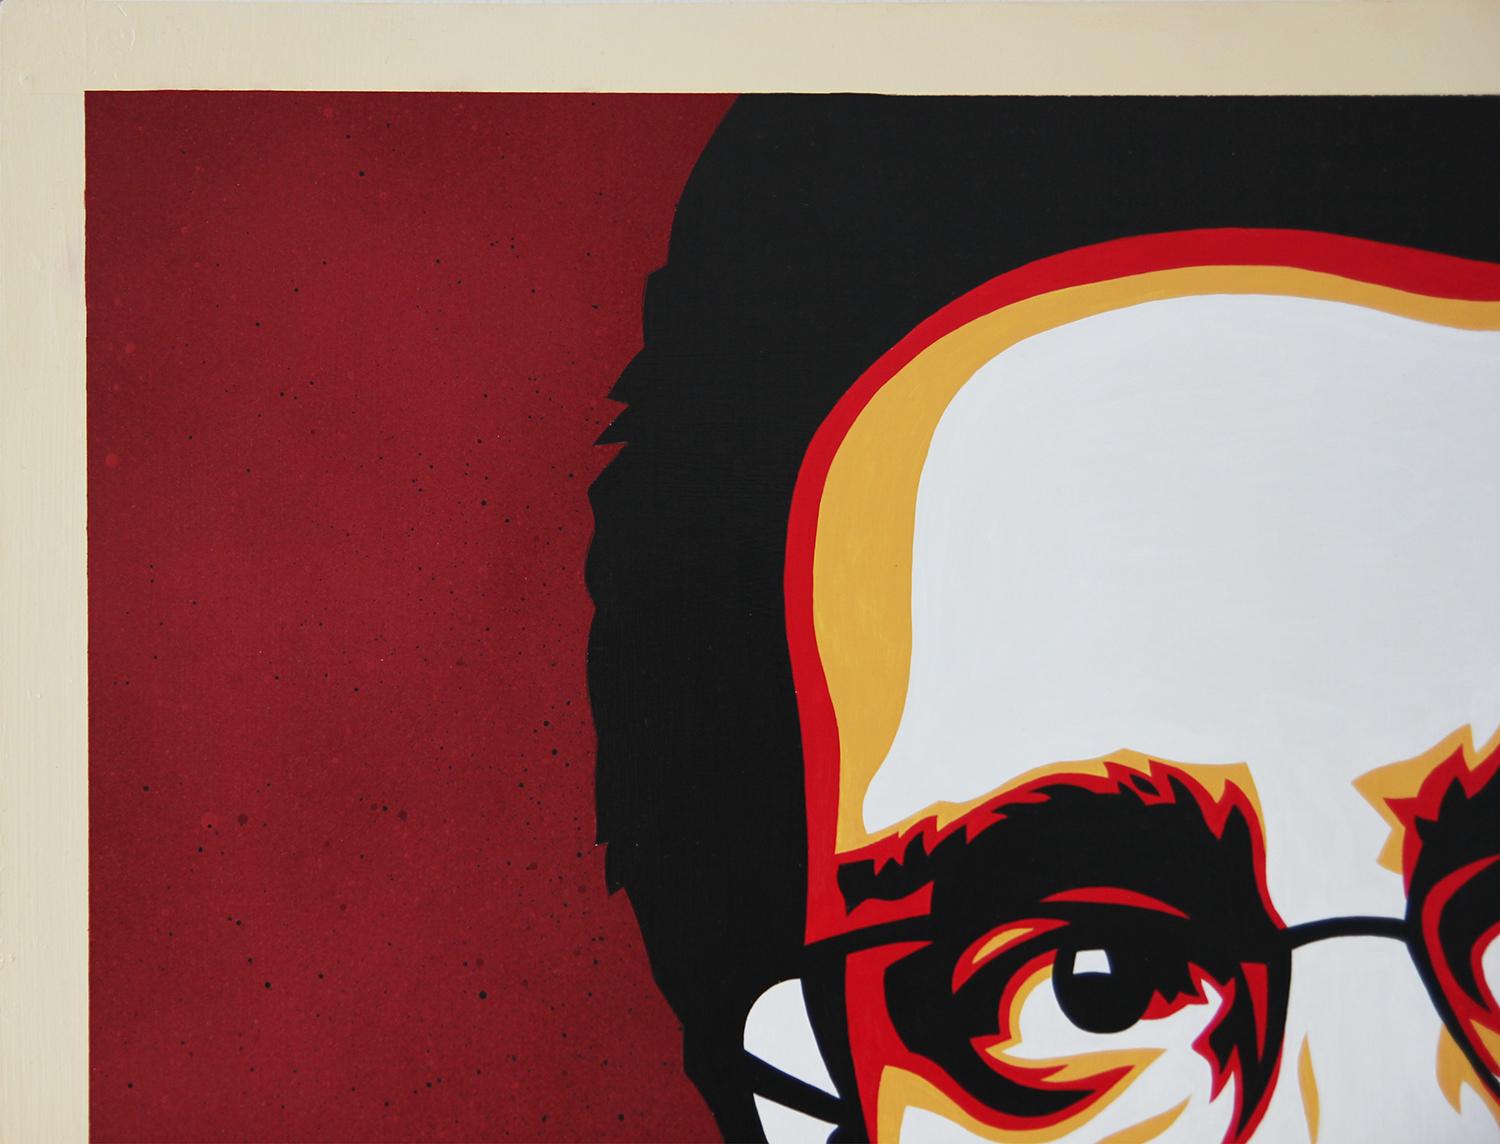 Abstraktes zeitgenössisches Gemälde von Edward Snowden des Künstlers Ed Booth aus Austin, Texas. Großes rotes, orangefarbenes und gelbes vektorisiertes Porträtbild von Snowden vor einem dunkelroten Hintergrund mit Farbverlauf. Signiert vom Künstler